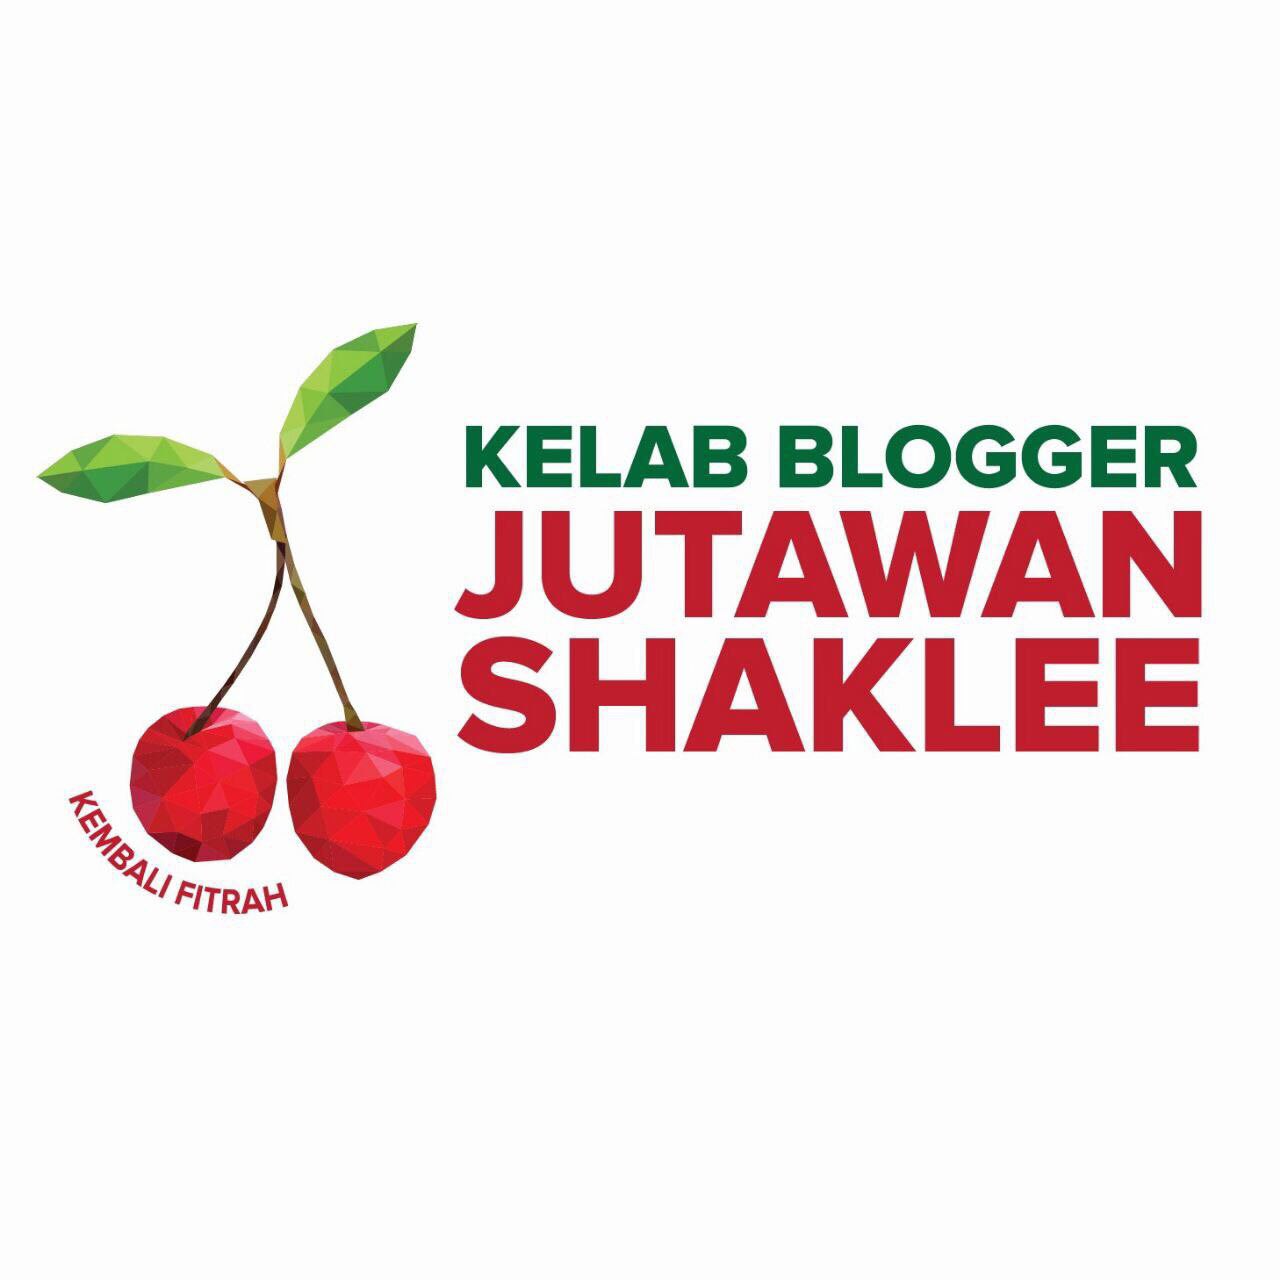 Kelab Blogger Jutawan